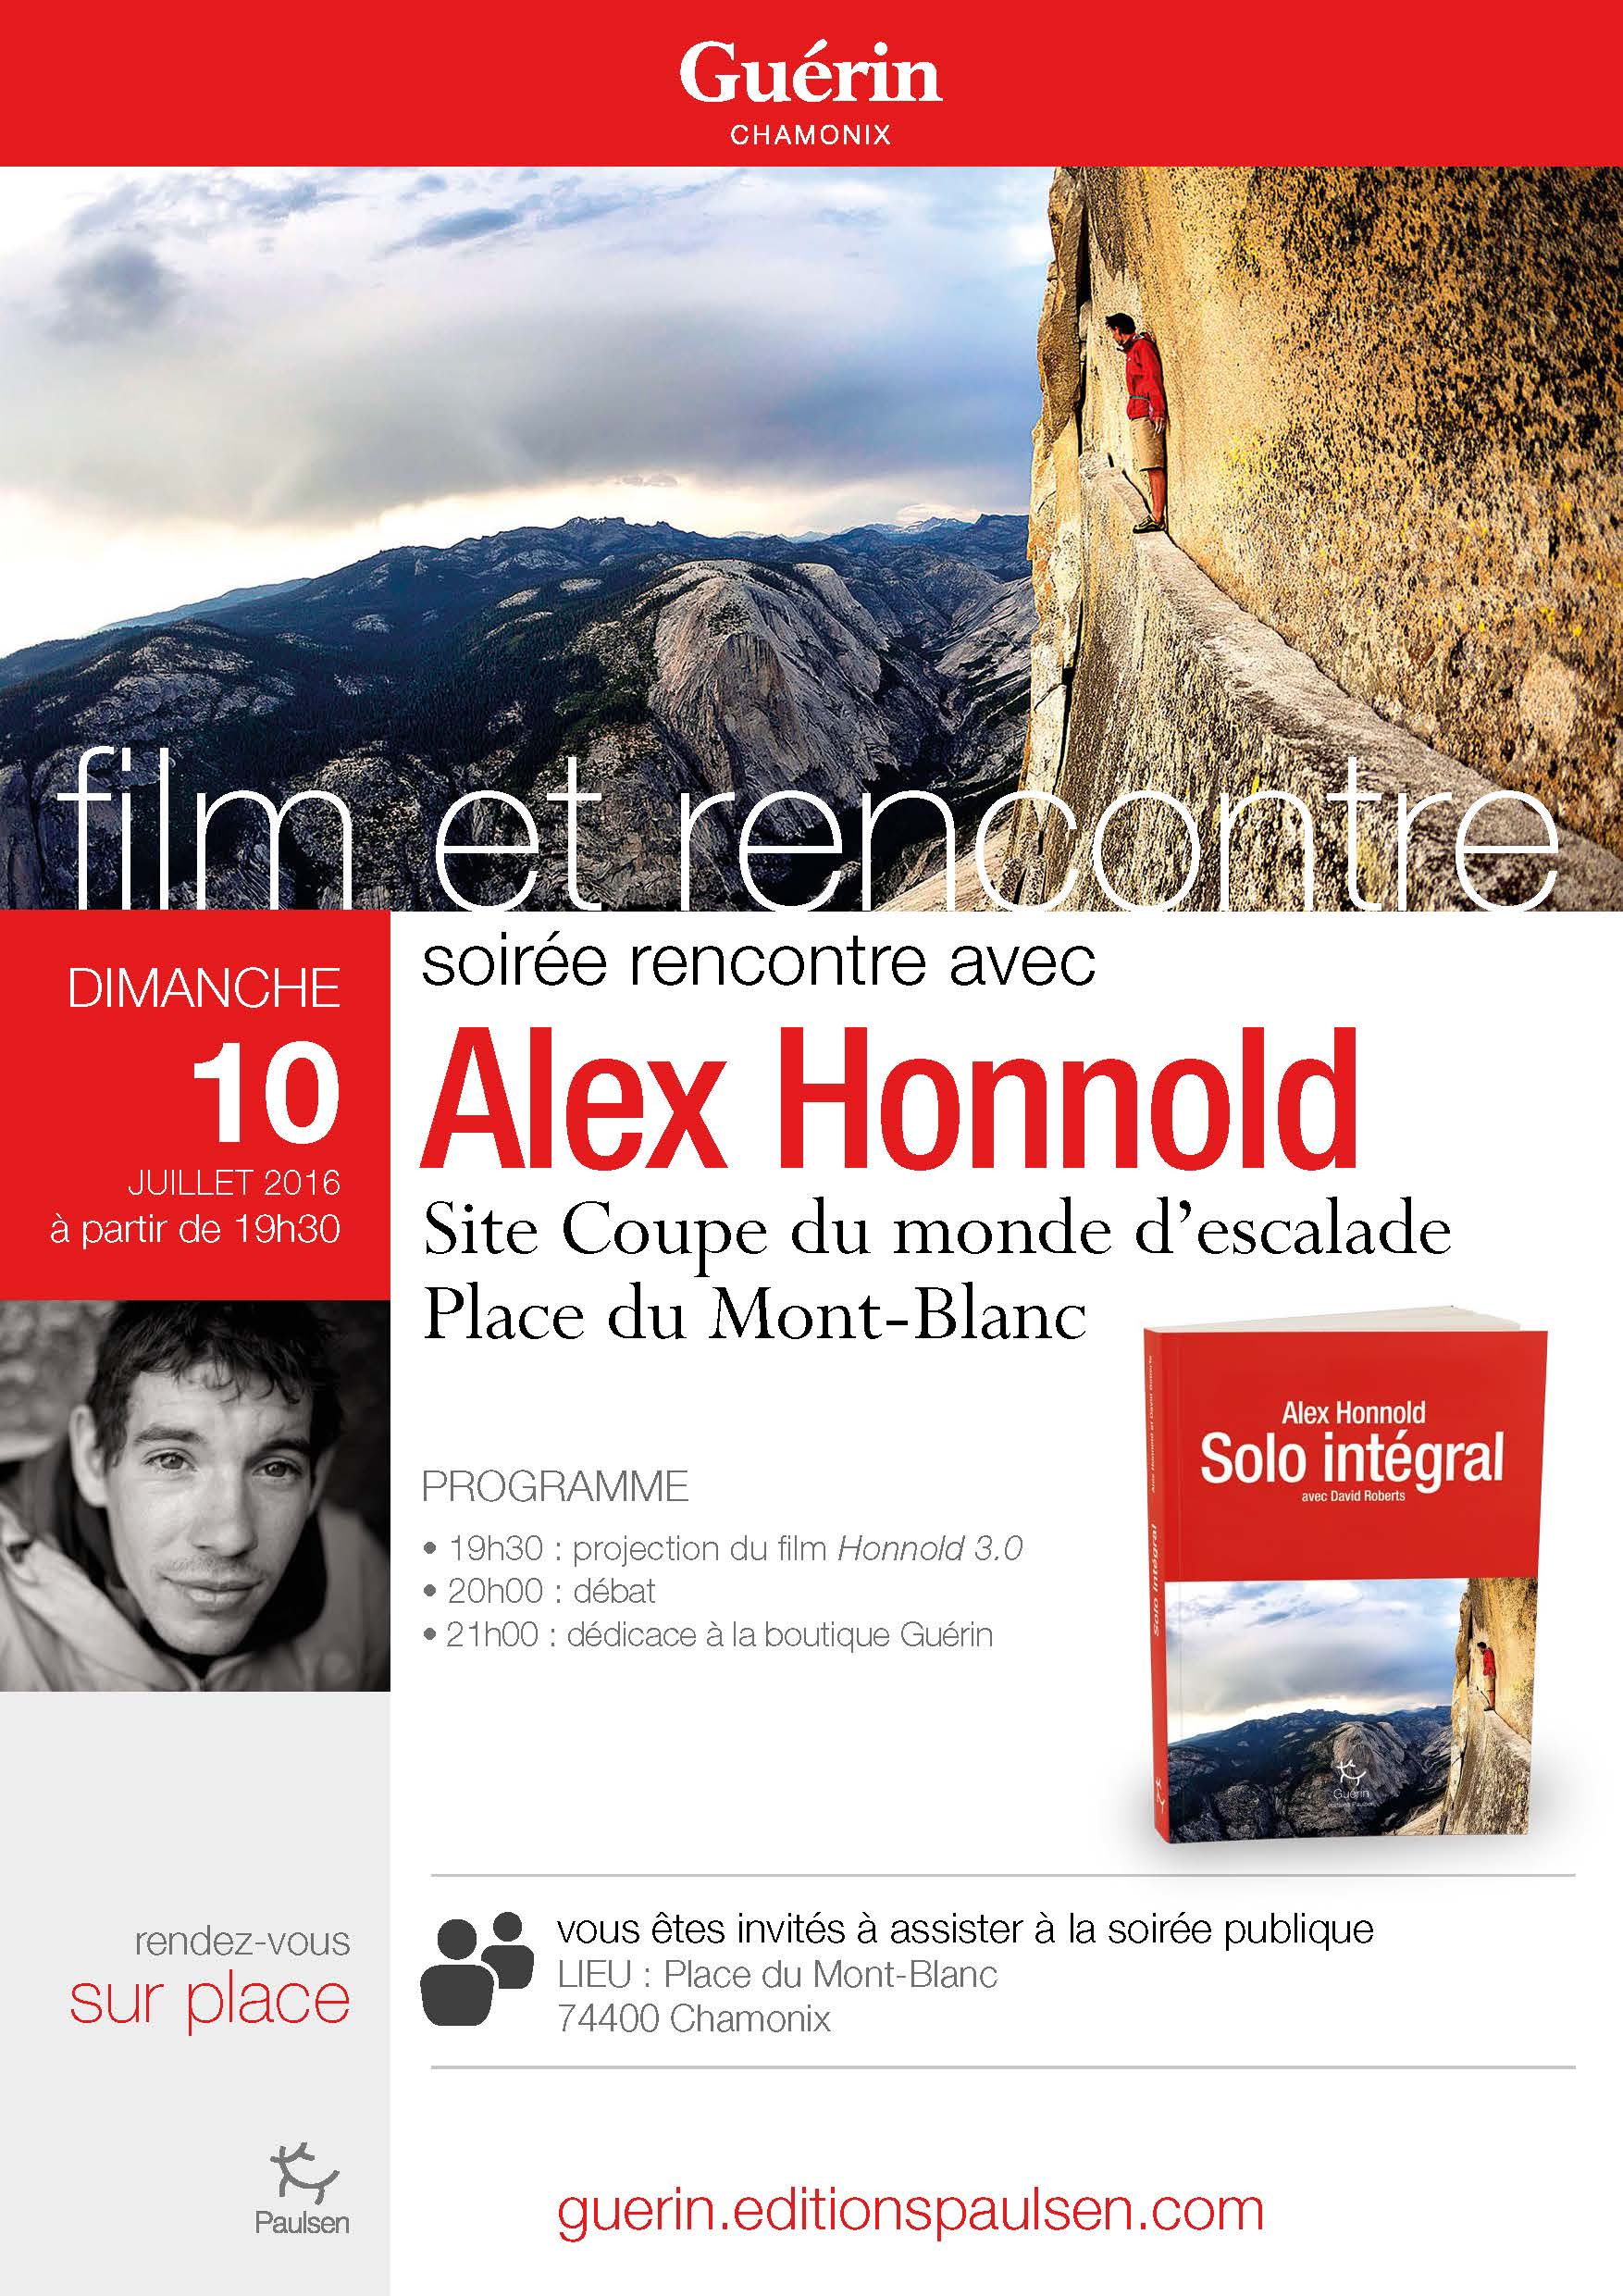 Film et rencontre Alex Honnold